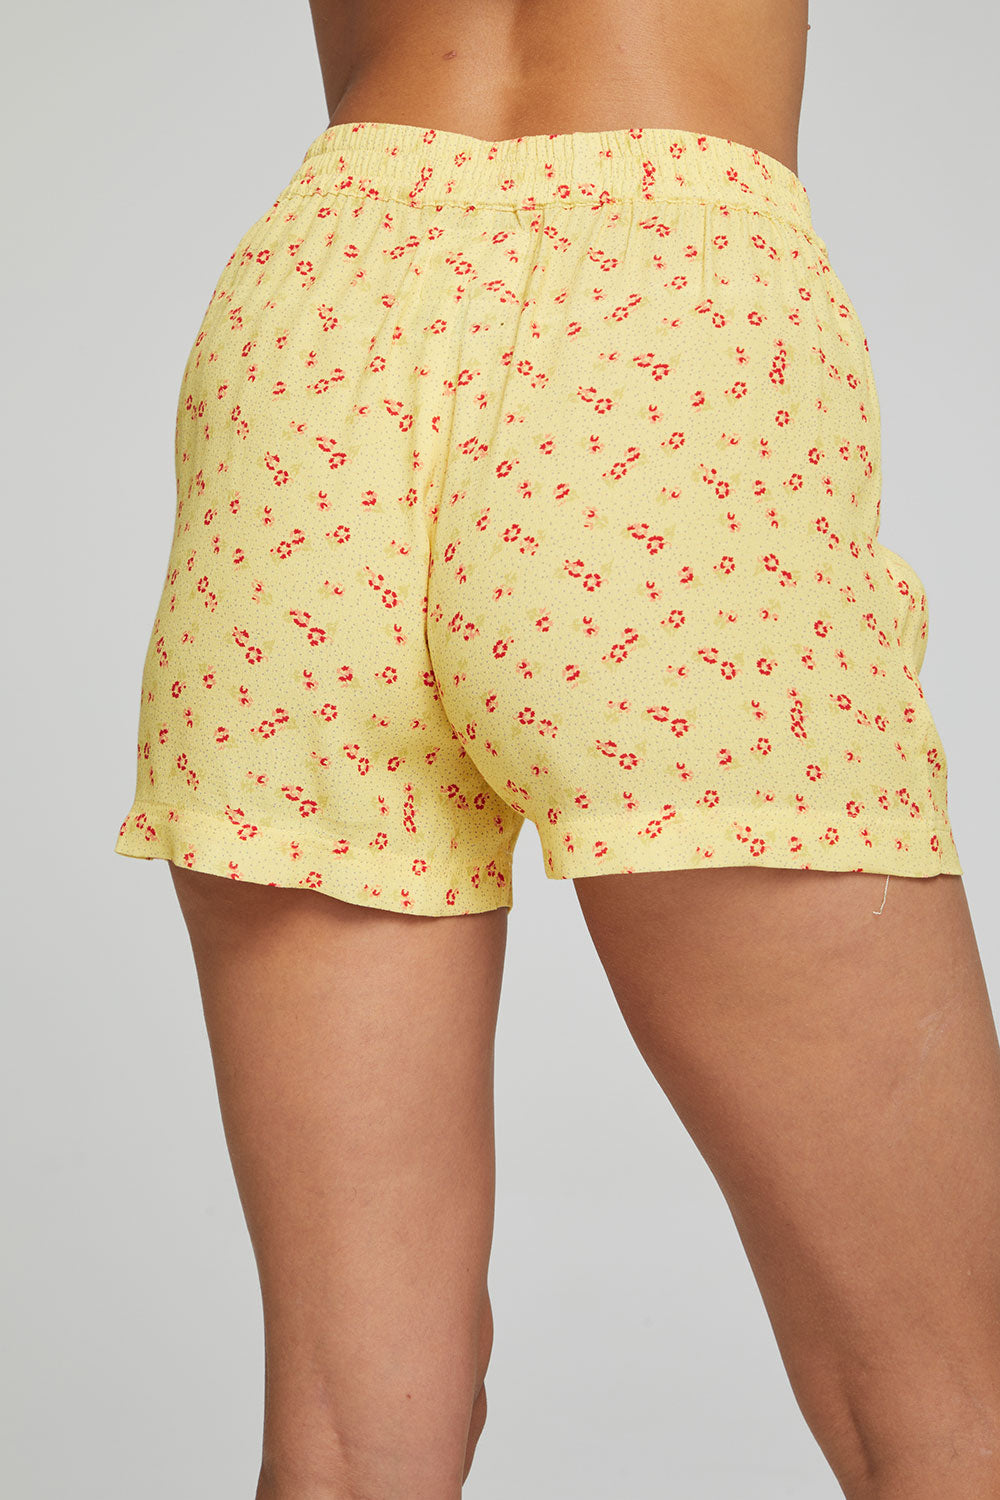 Ollie Boxer Shorts - Anise Flower Print